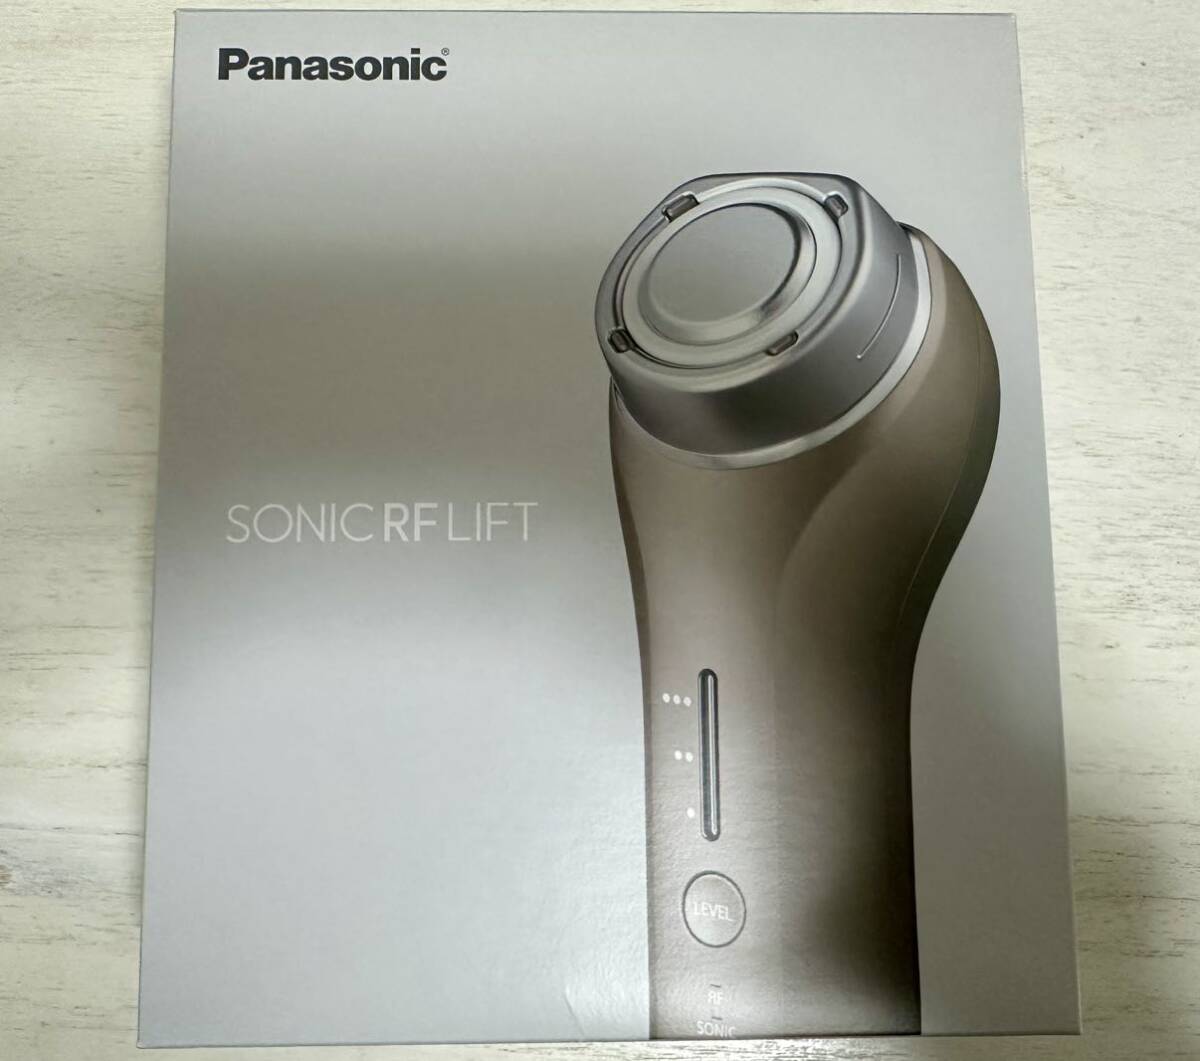 パナソニック Panasonic ソニック RF リフト EH-SR75 美顔器【中古】_画像1